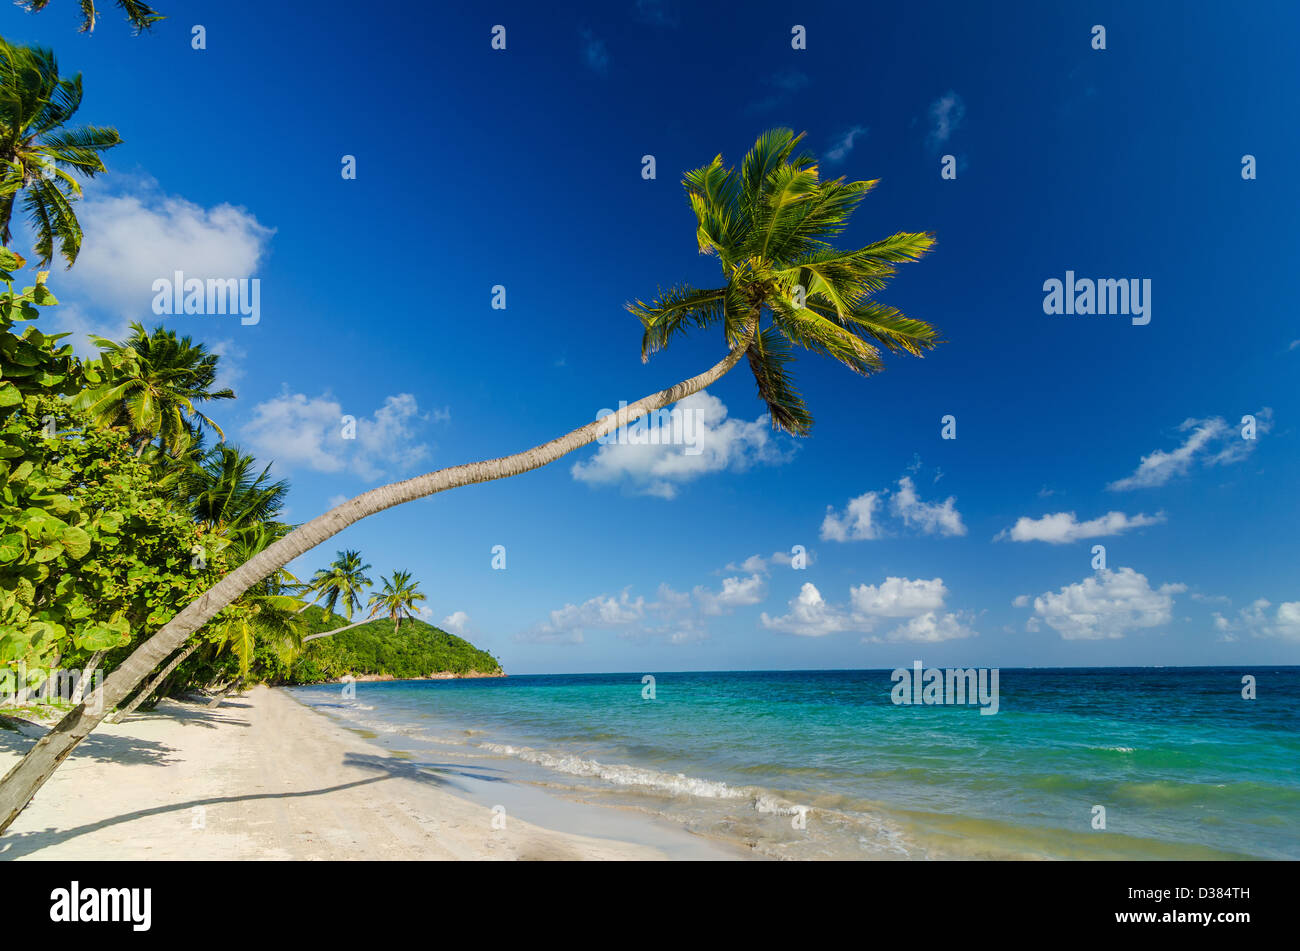 Un albero di palma su una spiaggia di sabbia bianca e mare turchino dei Caraibi acqua Foto Stock